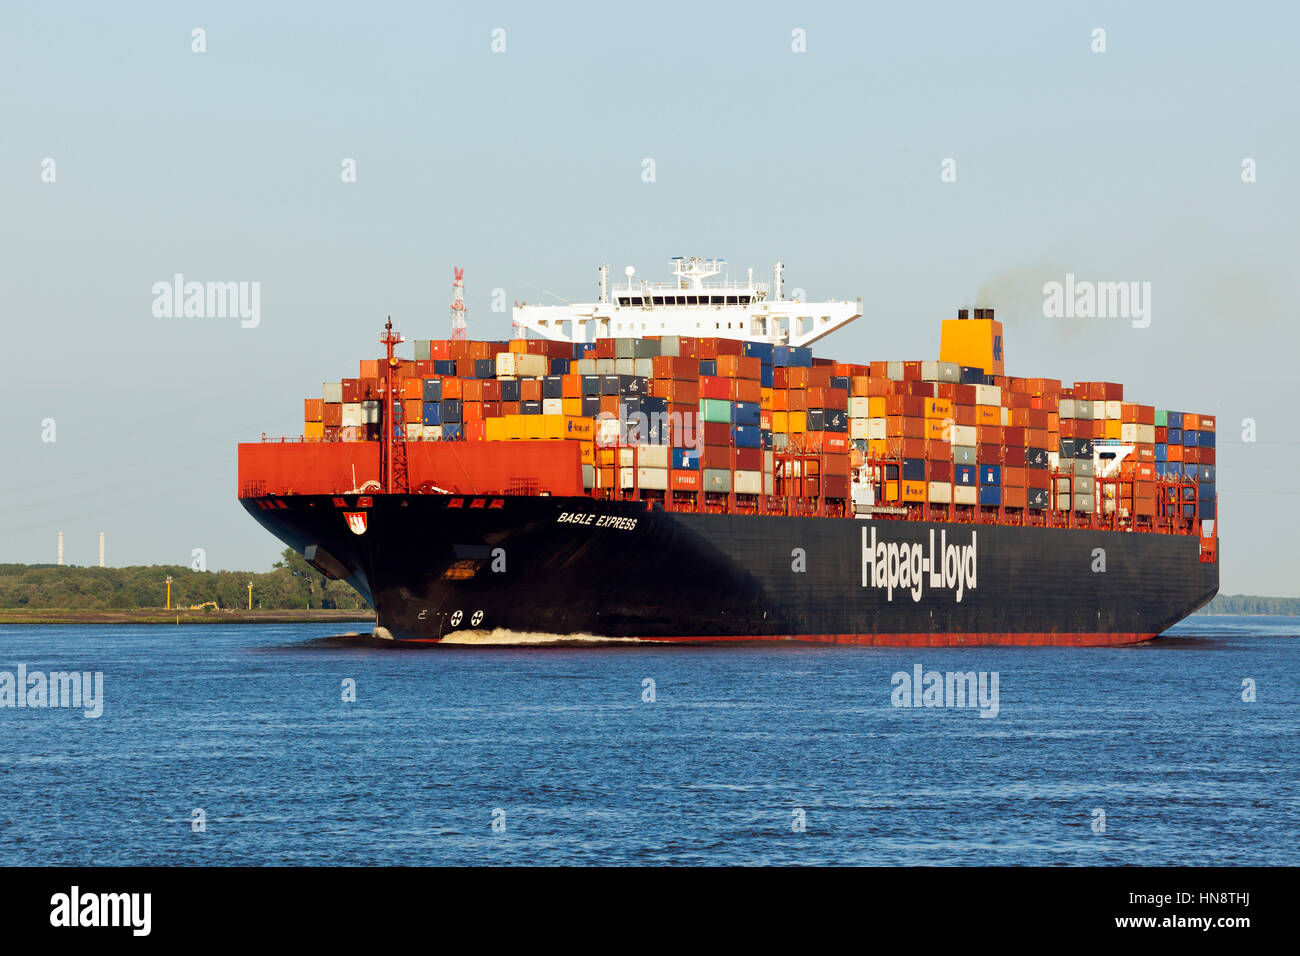 Stade, Deutschland - Juni 11, 2015: Container schiff Basel Express auf der Elbe. Der Post-Panamax-Klasse Schiff ist im Besitz und wird betrieben von Hapag-Lloyd Stockfoto